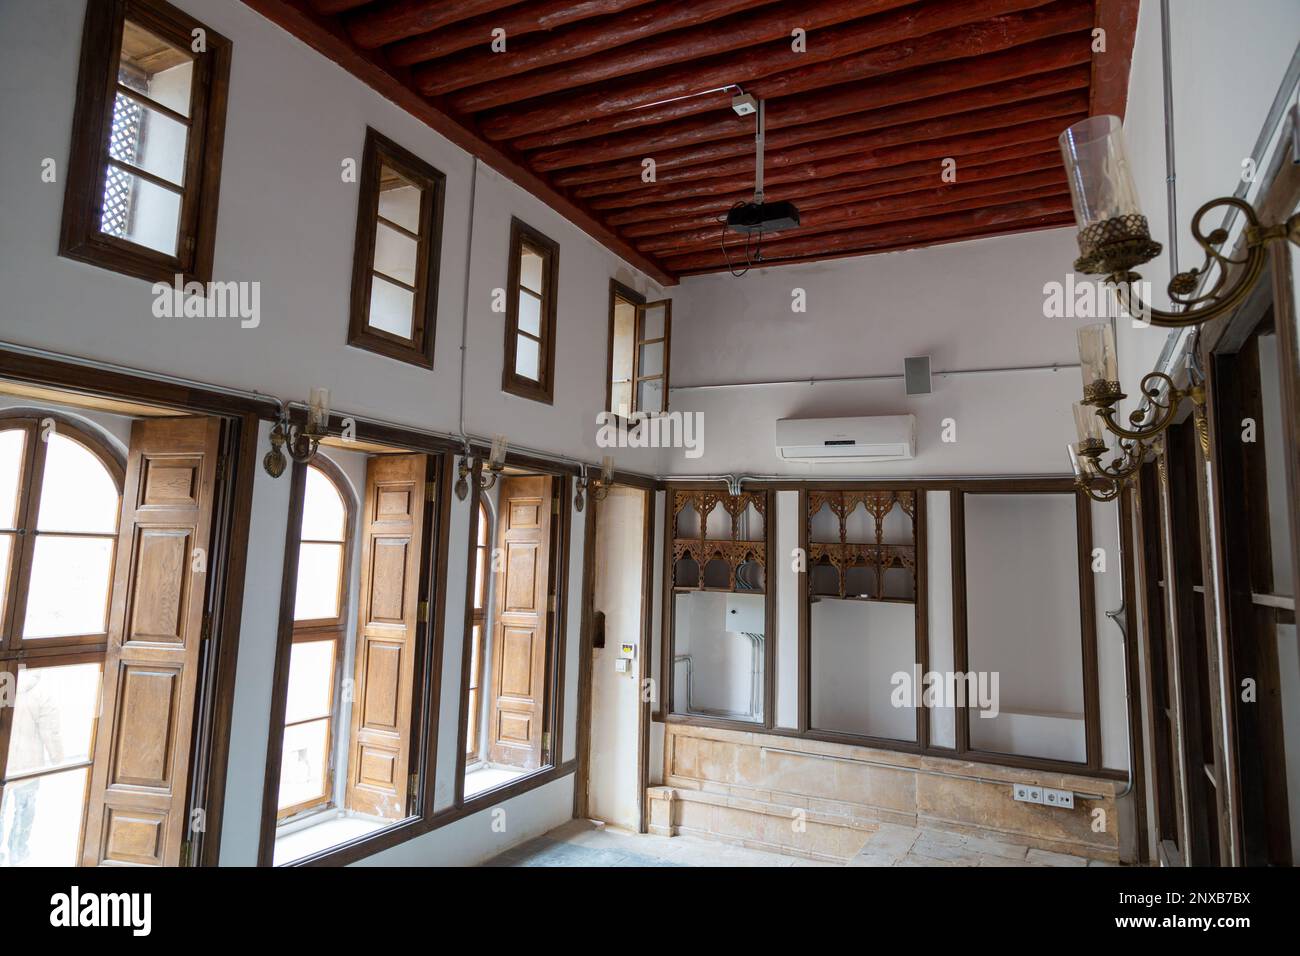 Vista interna di una tradizionale casa Kilis (Mahmut Islam Bey Mansion), Turchia. Soffitto in legno, finestre e scaffali a muro in una stanza. Foto Stock